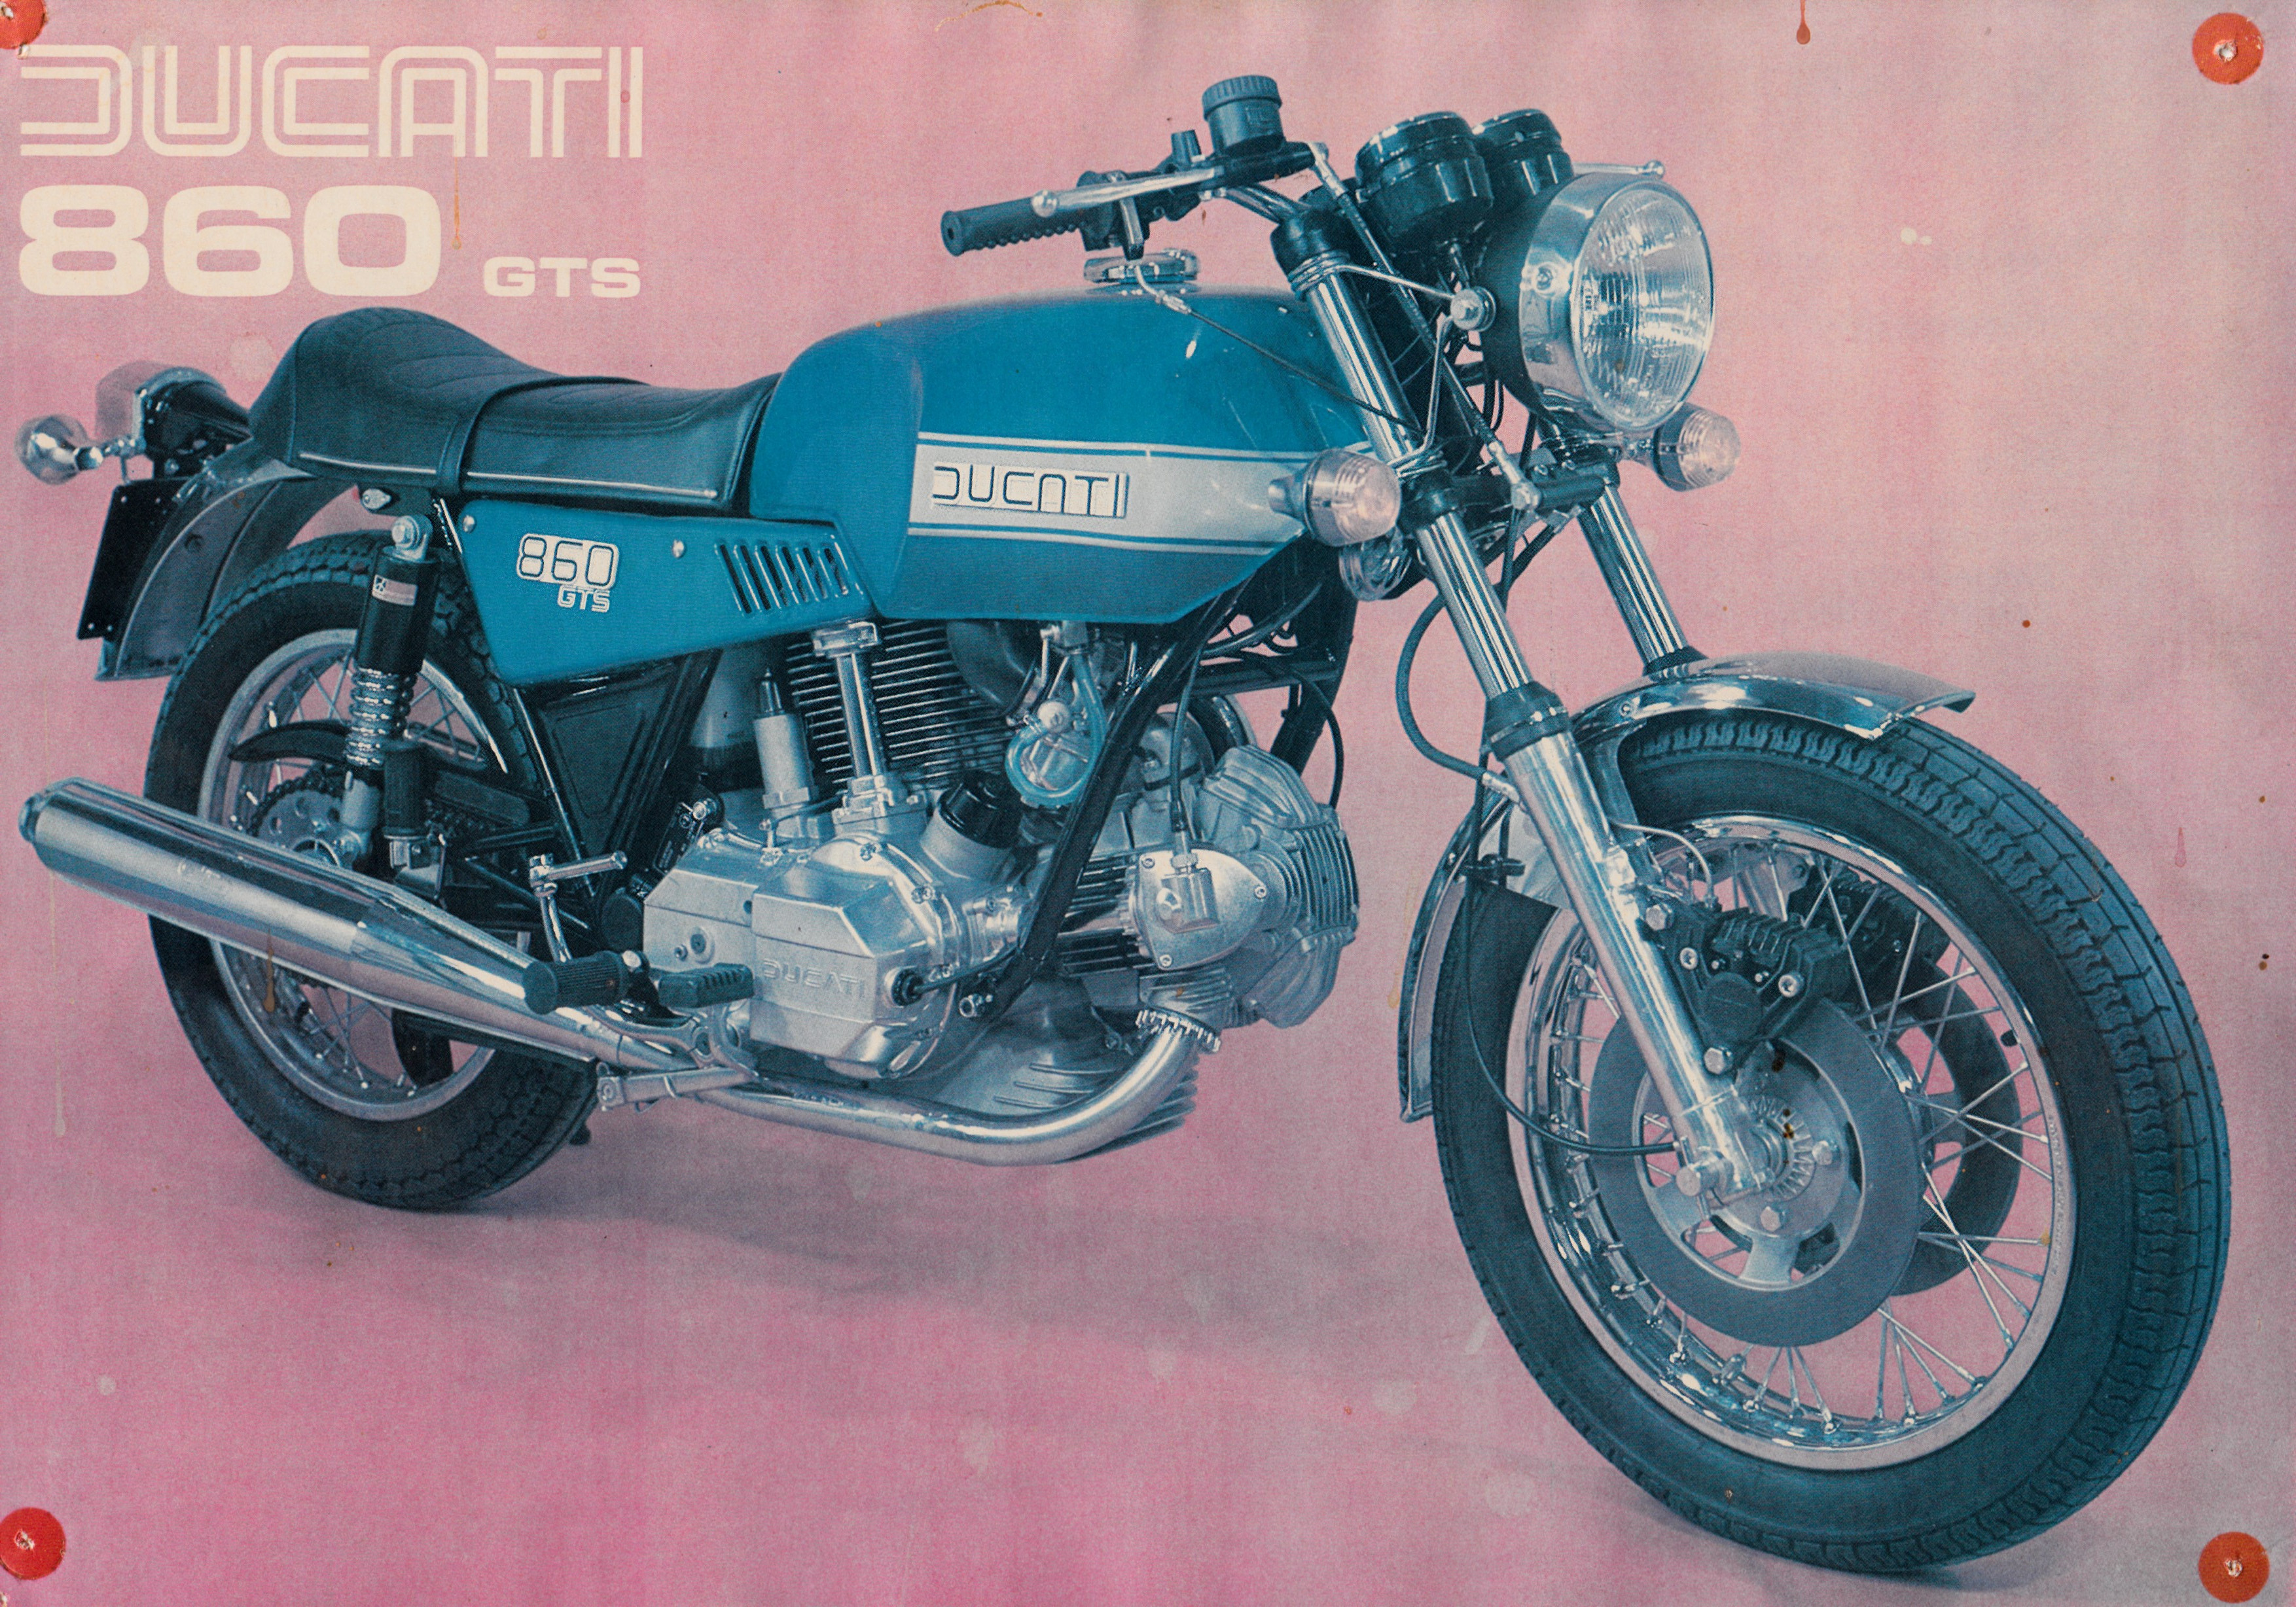 Brochure - Ducati 860 GTS